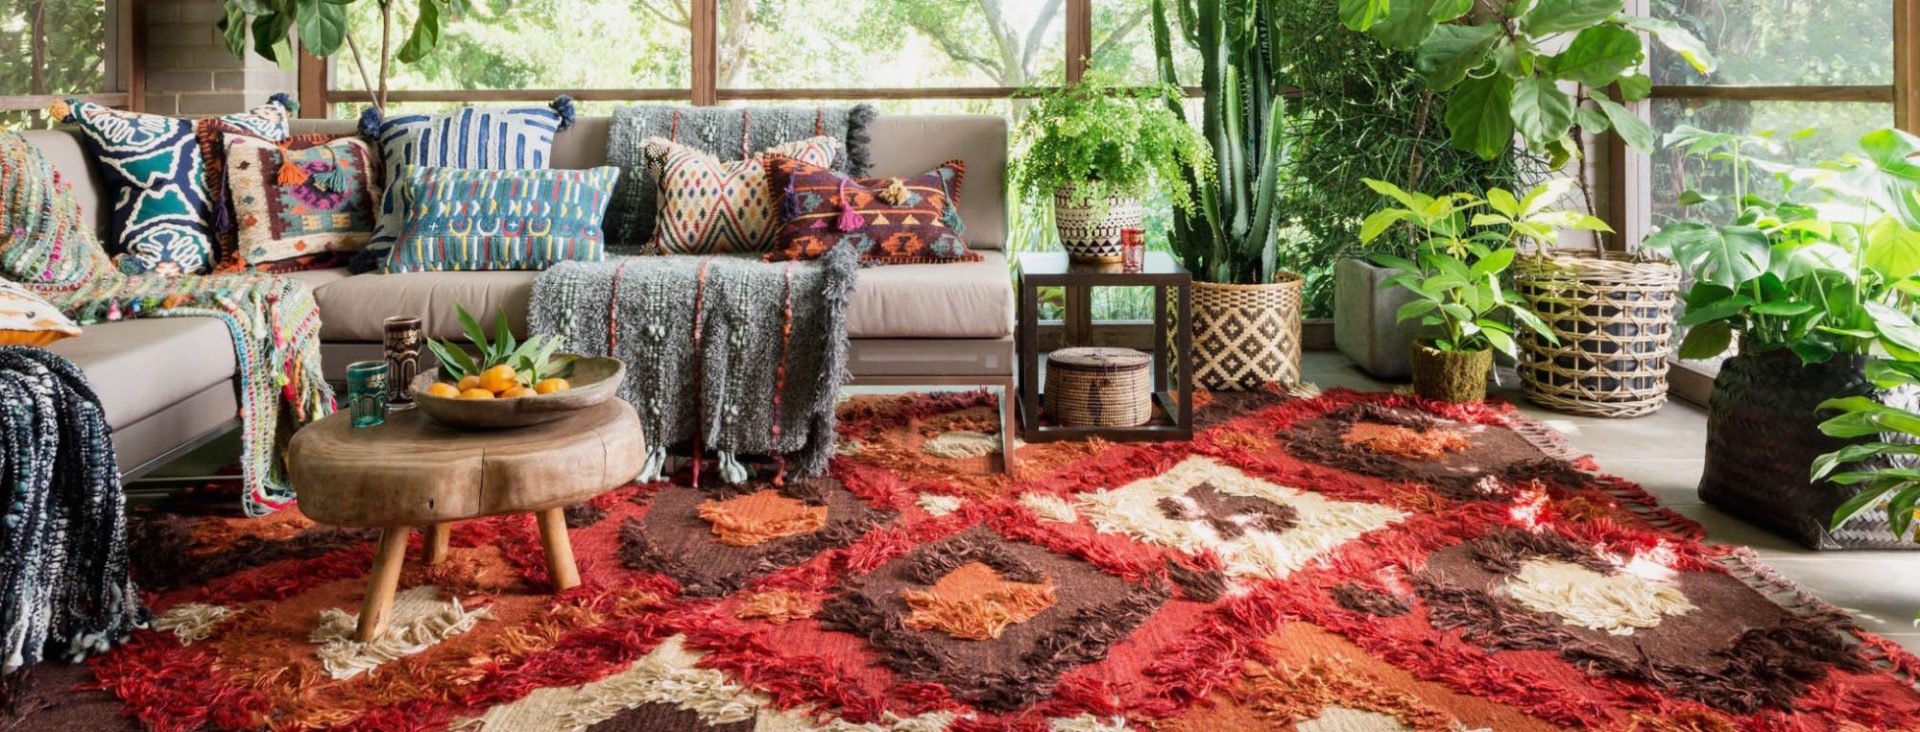 Carpet Buying Tips: कारपेट खरीदते समय इन 5 बातों का रखें ध्यान, वरना हो सकता है घाटे का सौदा